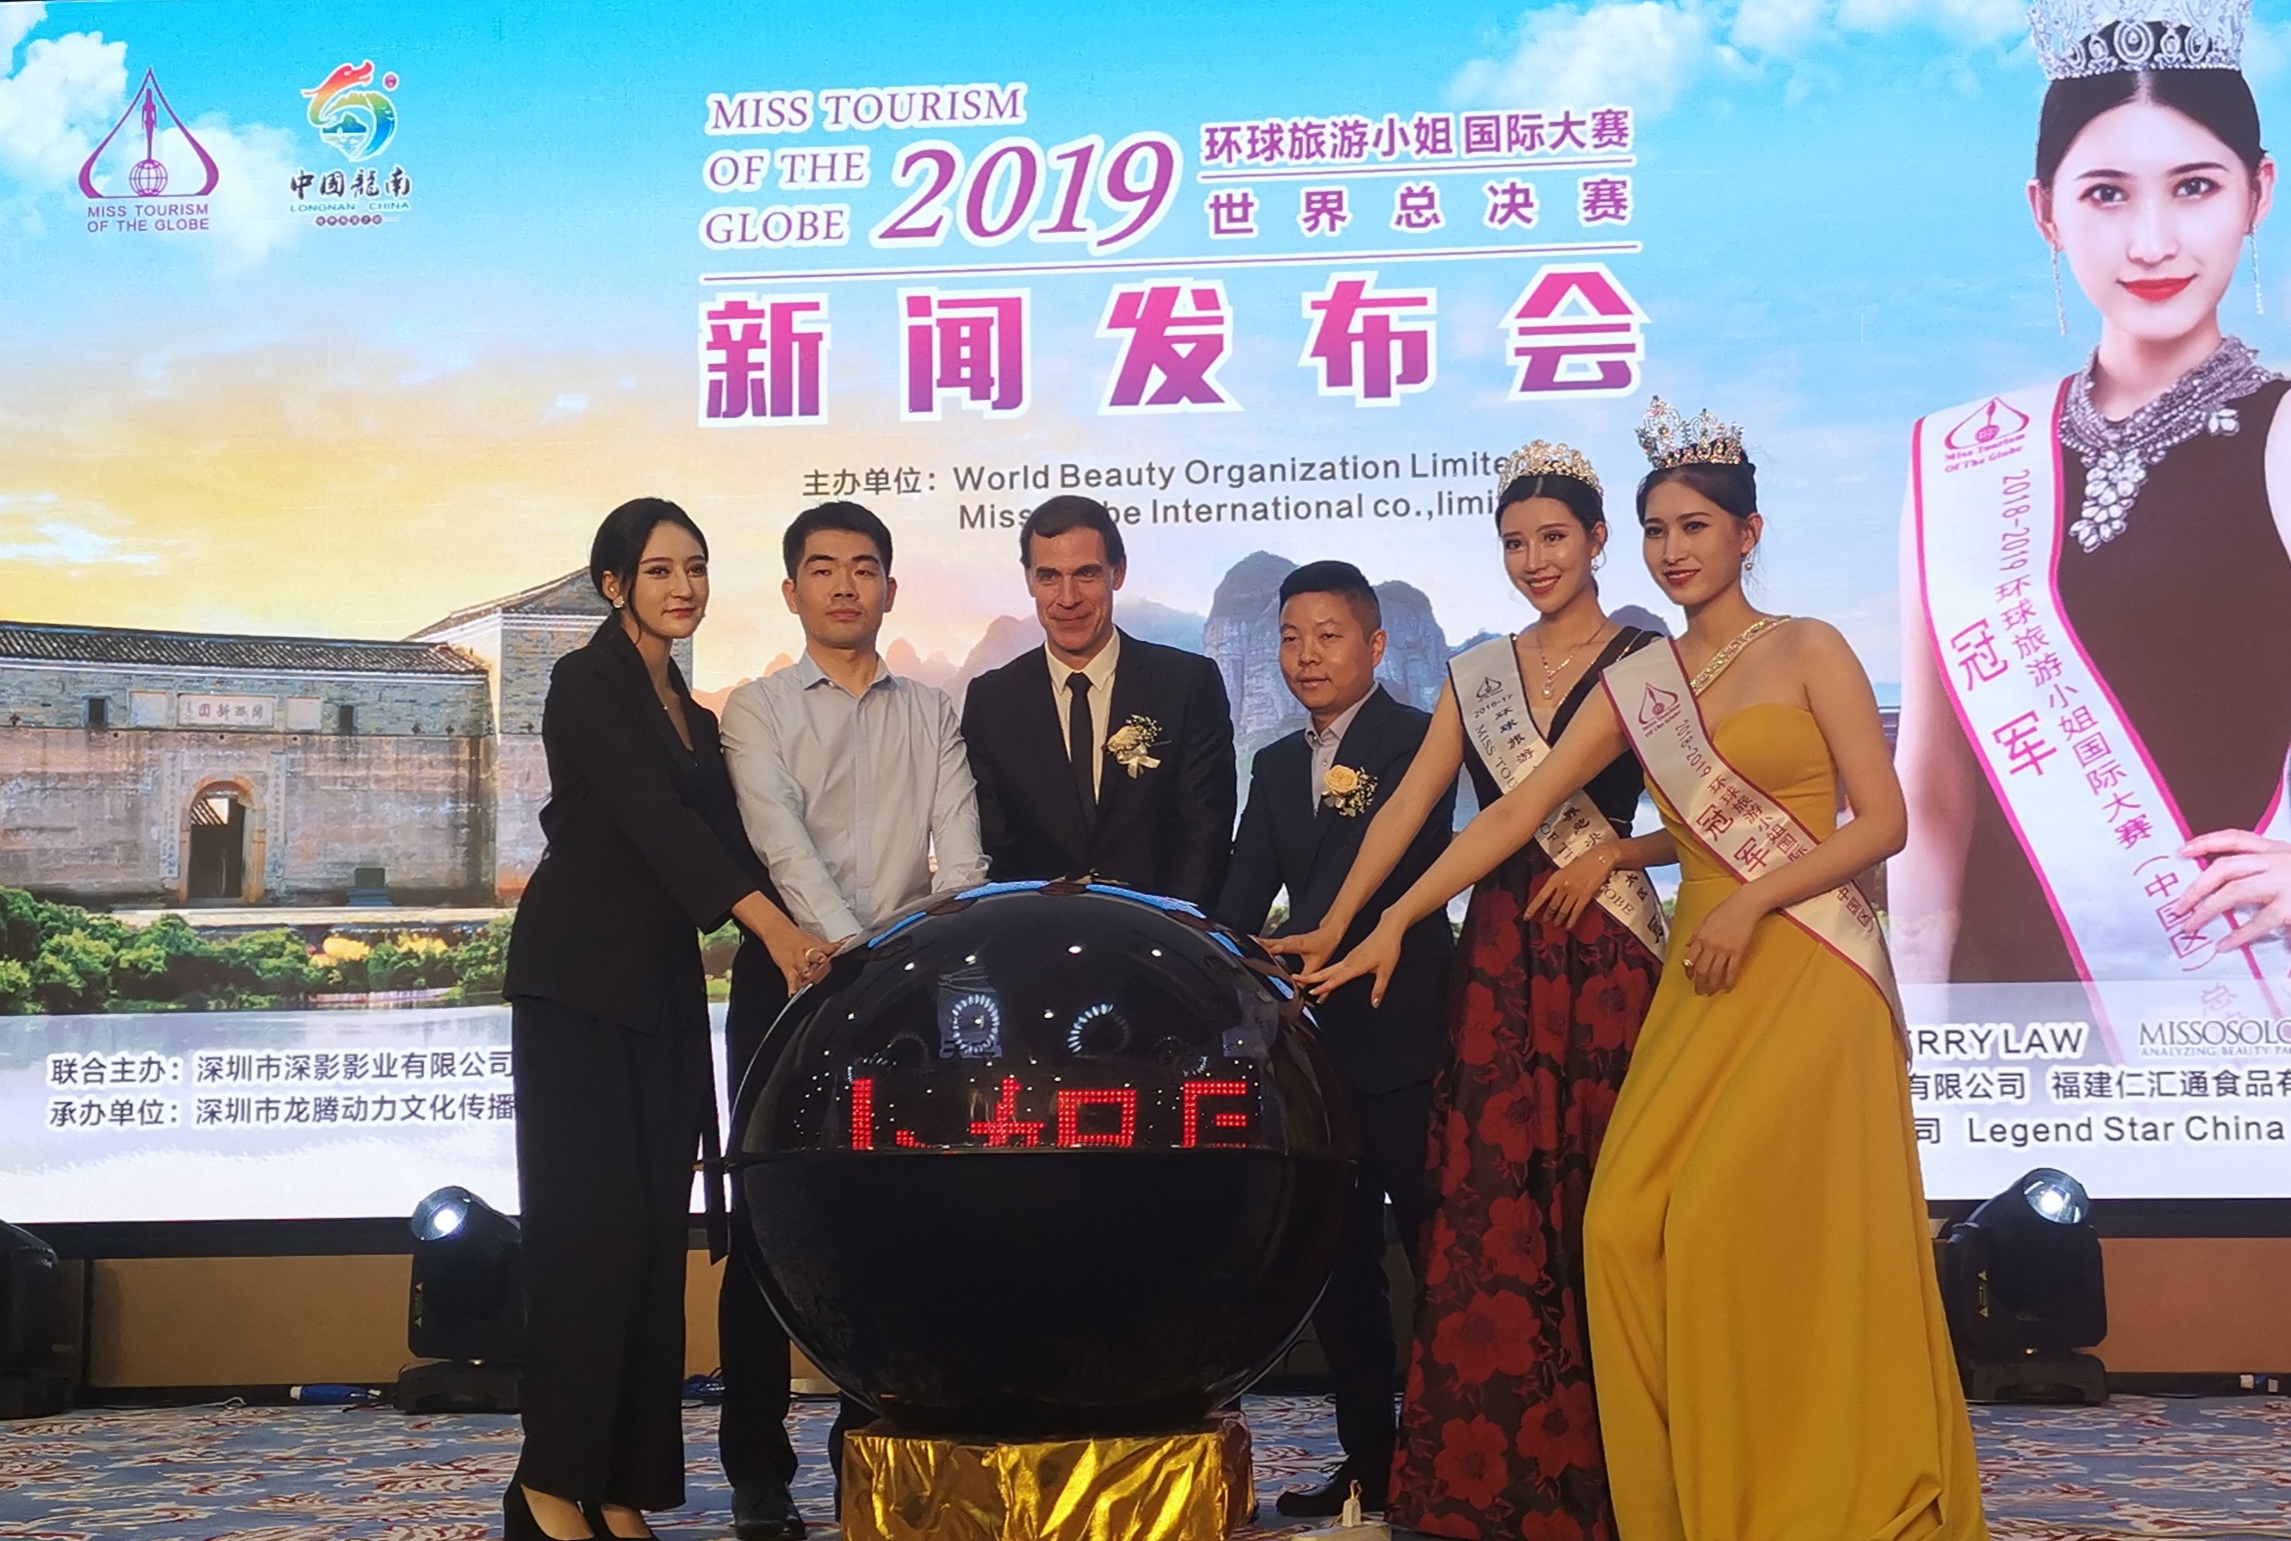 2019环球旅游小姐世界总决赛将在“世界围屋之都”龙南举办